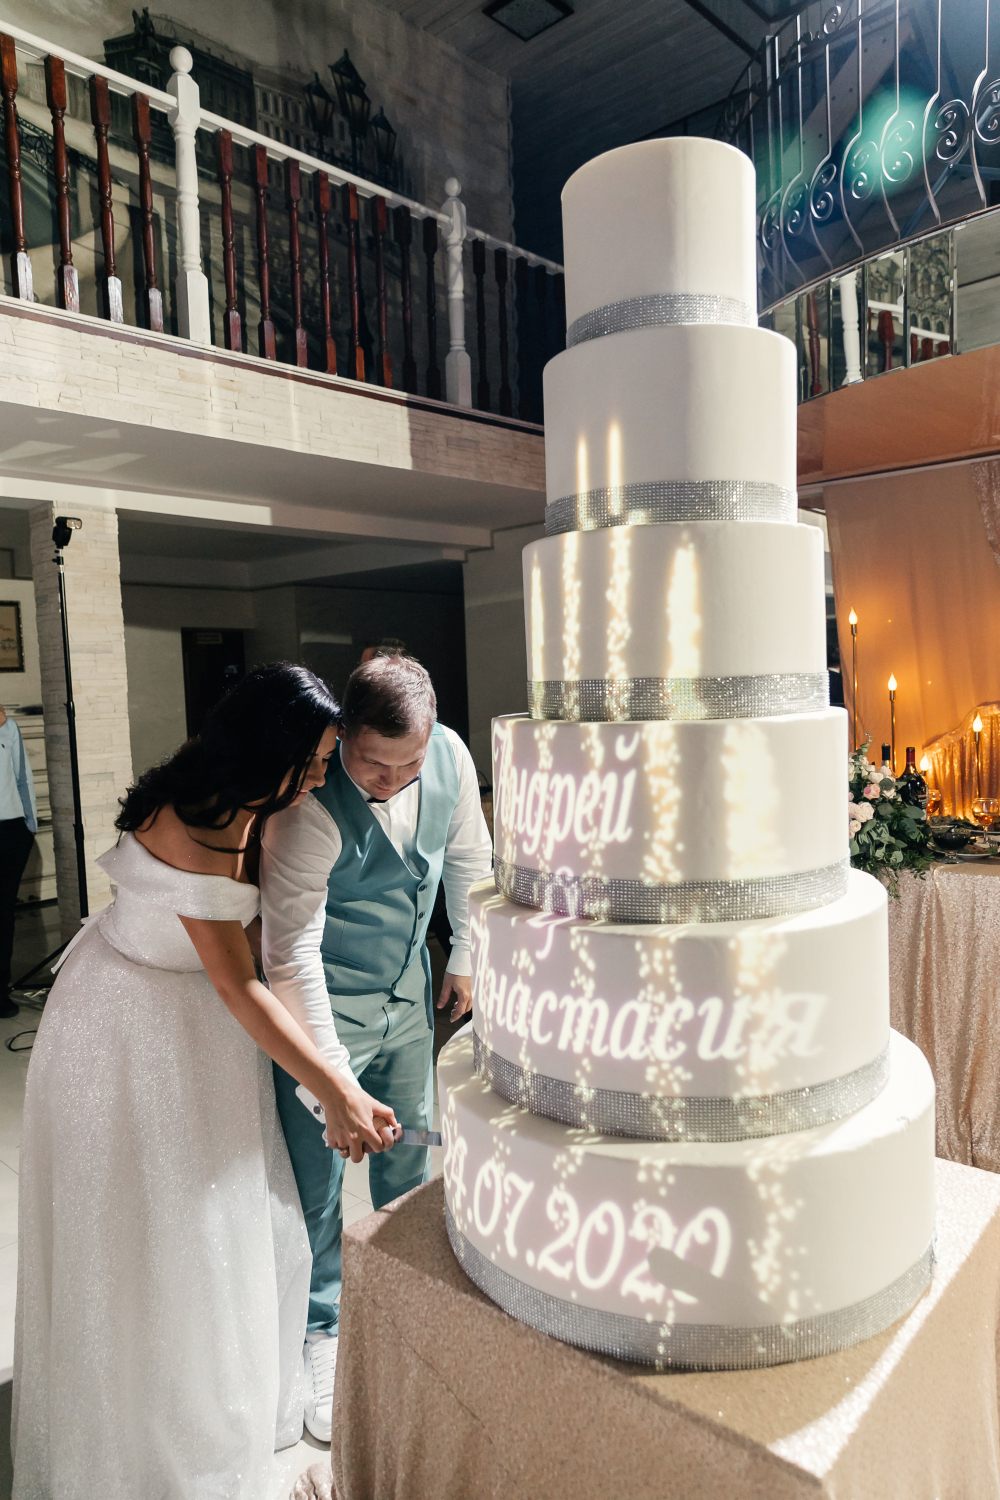 Заказать световое шоу на свадебный торт в Санкт-Петербурге Luma Cake. 3d маппинг на торт в Спб на заказ. Пиши в ДИРЕКТ или WhatsApp: 89819847706